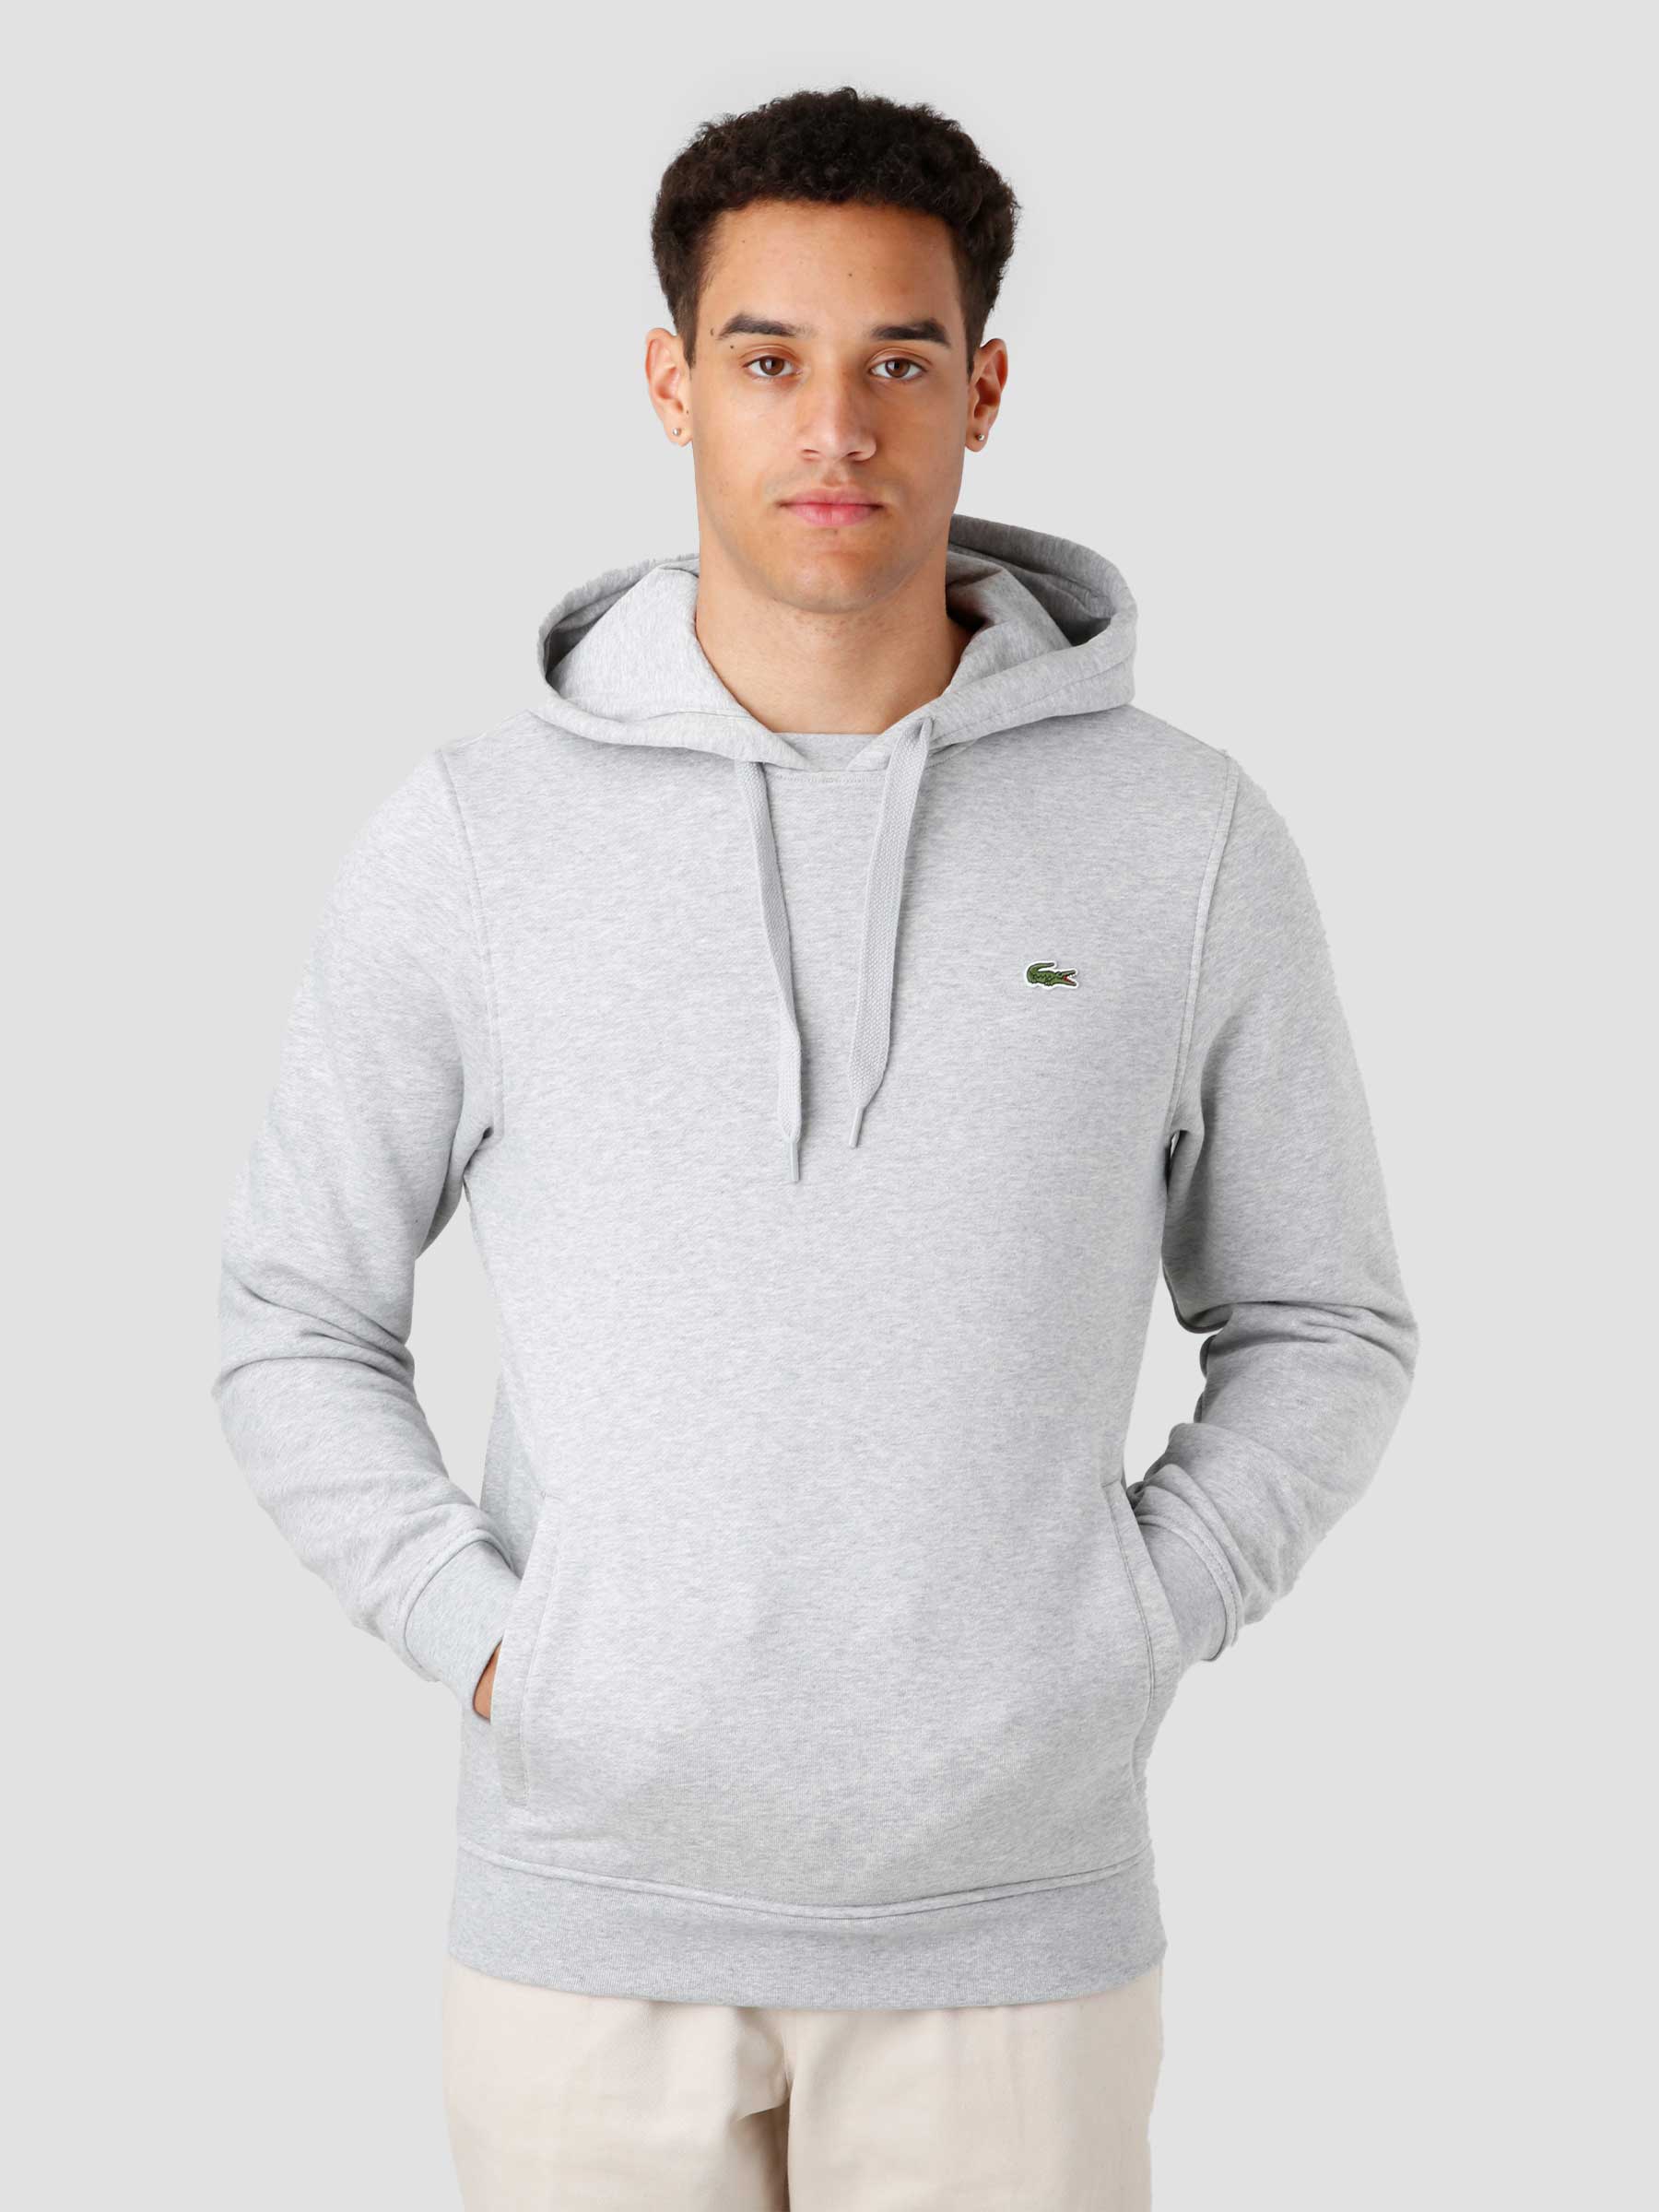  Men's Sweatshirt Grey SH1527-21